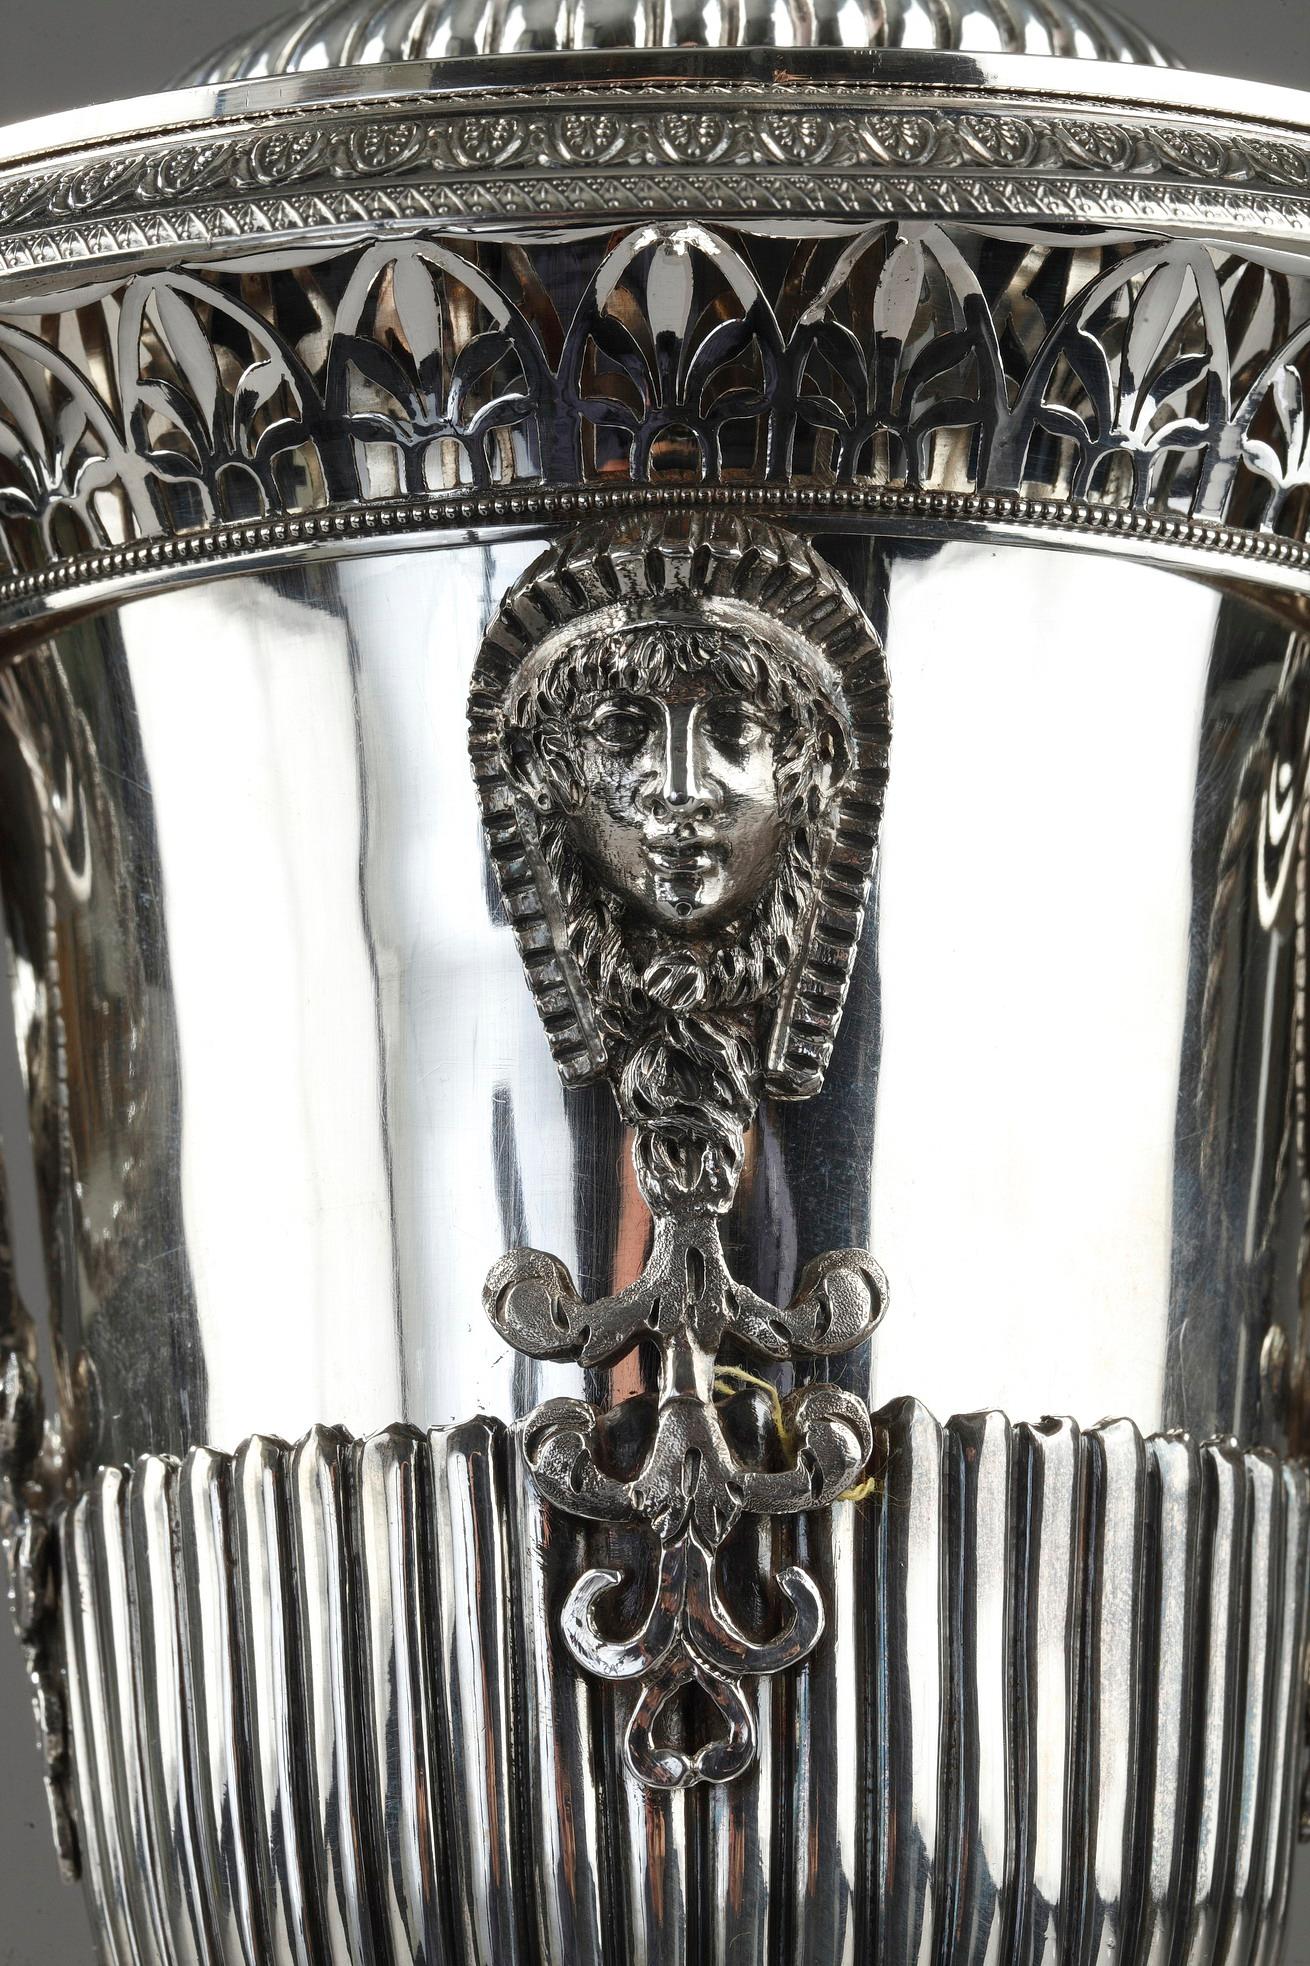 Silberne Dragee- oder Bonbonschale aus dem frühen 19. Jahrhundert, verziert mit ägyptischem Kopf und durchbrochenen Palmettenmotiven auf dem Kragen. An den beiden spiralförmigen Griffen sind zwei gedrehte Ringe aufgehängt. Der Sockel ist mit